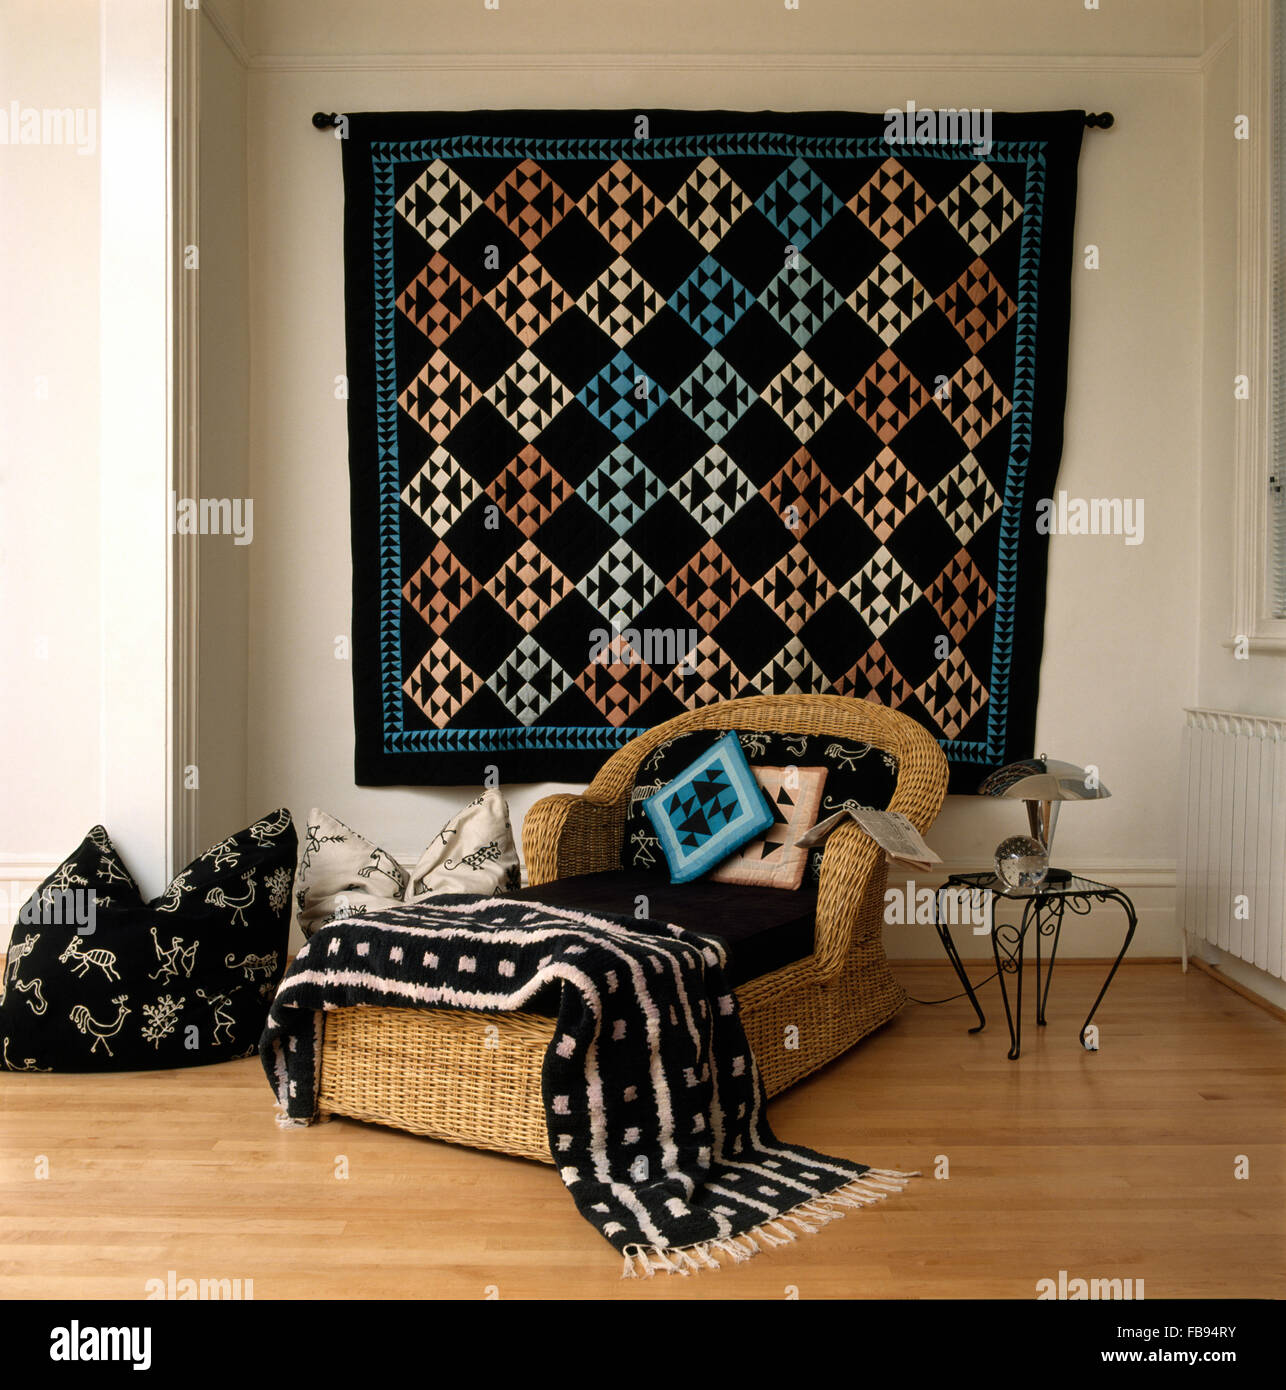 Tappeto tessuto da parete in soggiorno con un nero+bianco buttare in lana su una wicker chaise longue Foto Stock